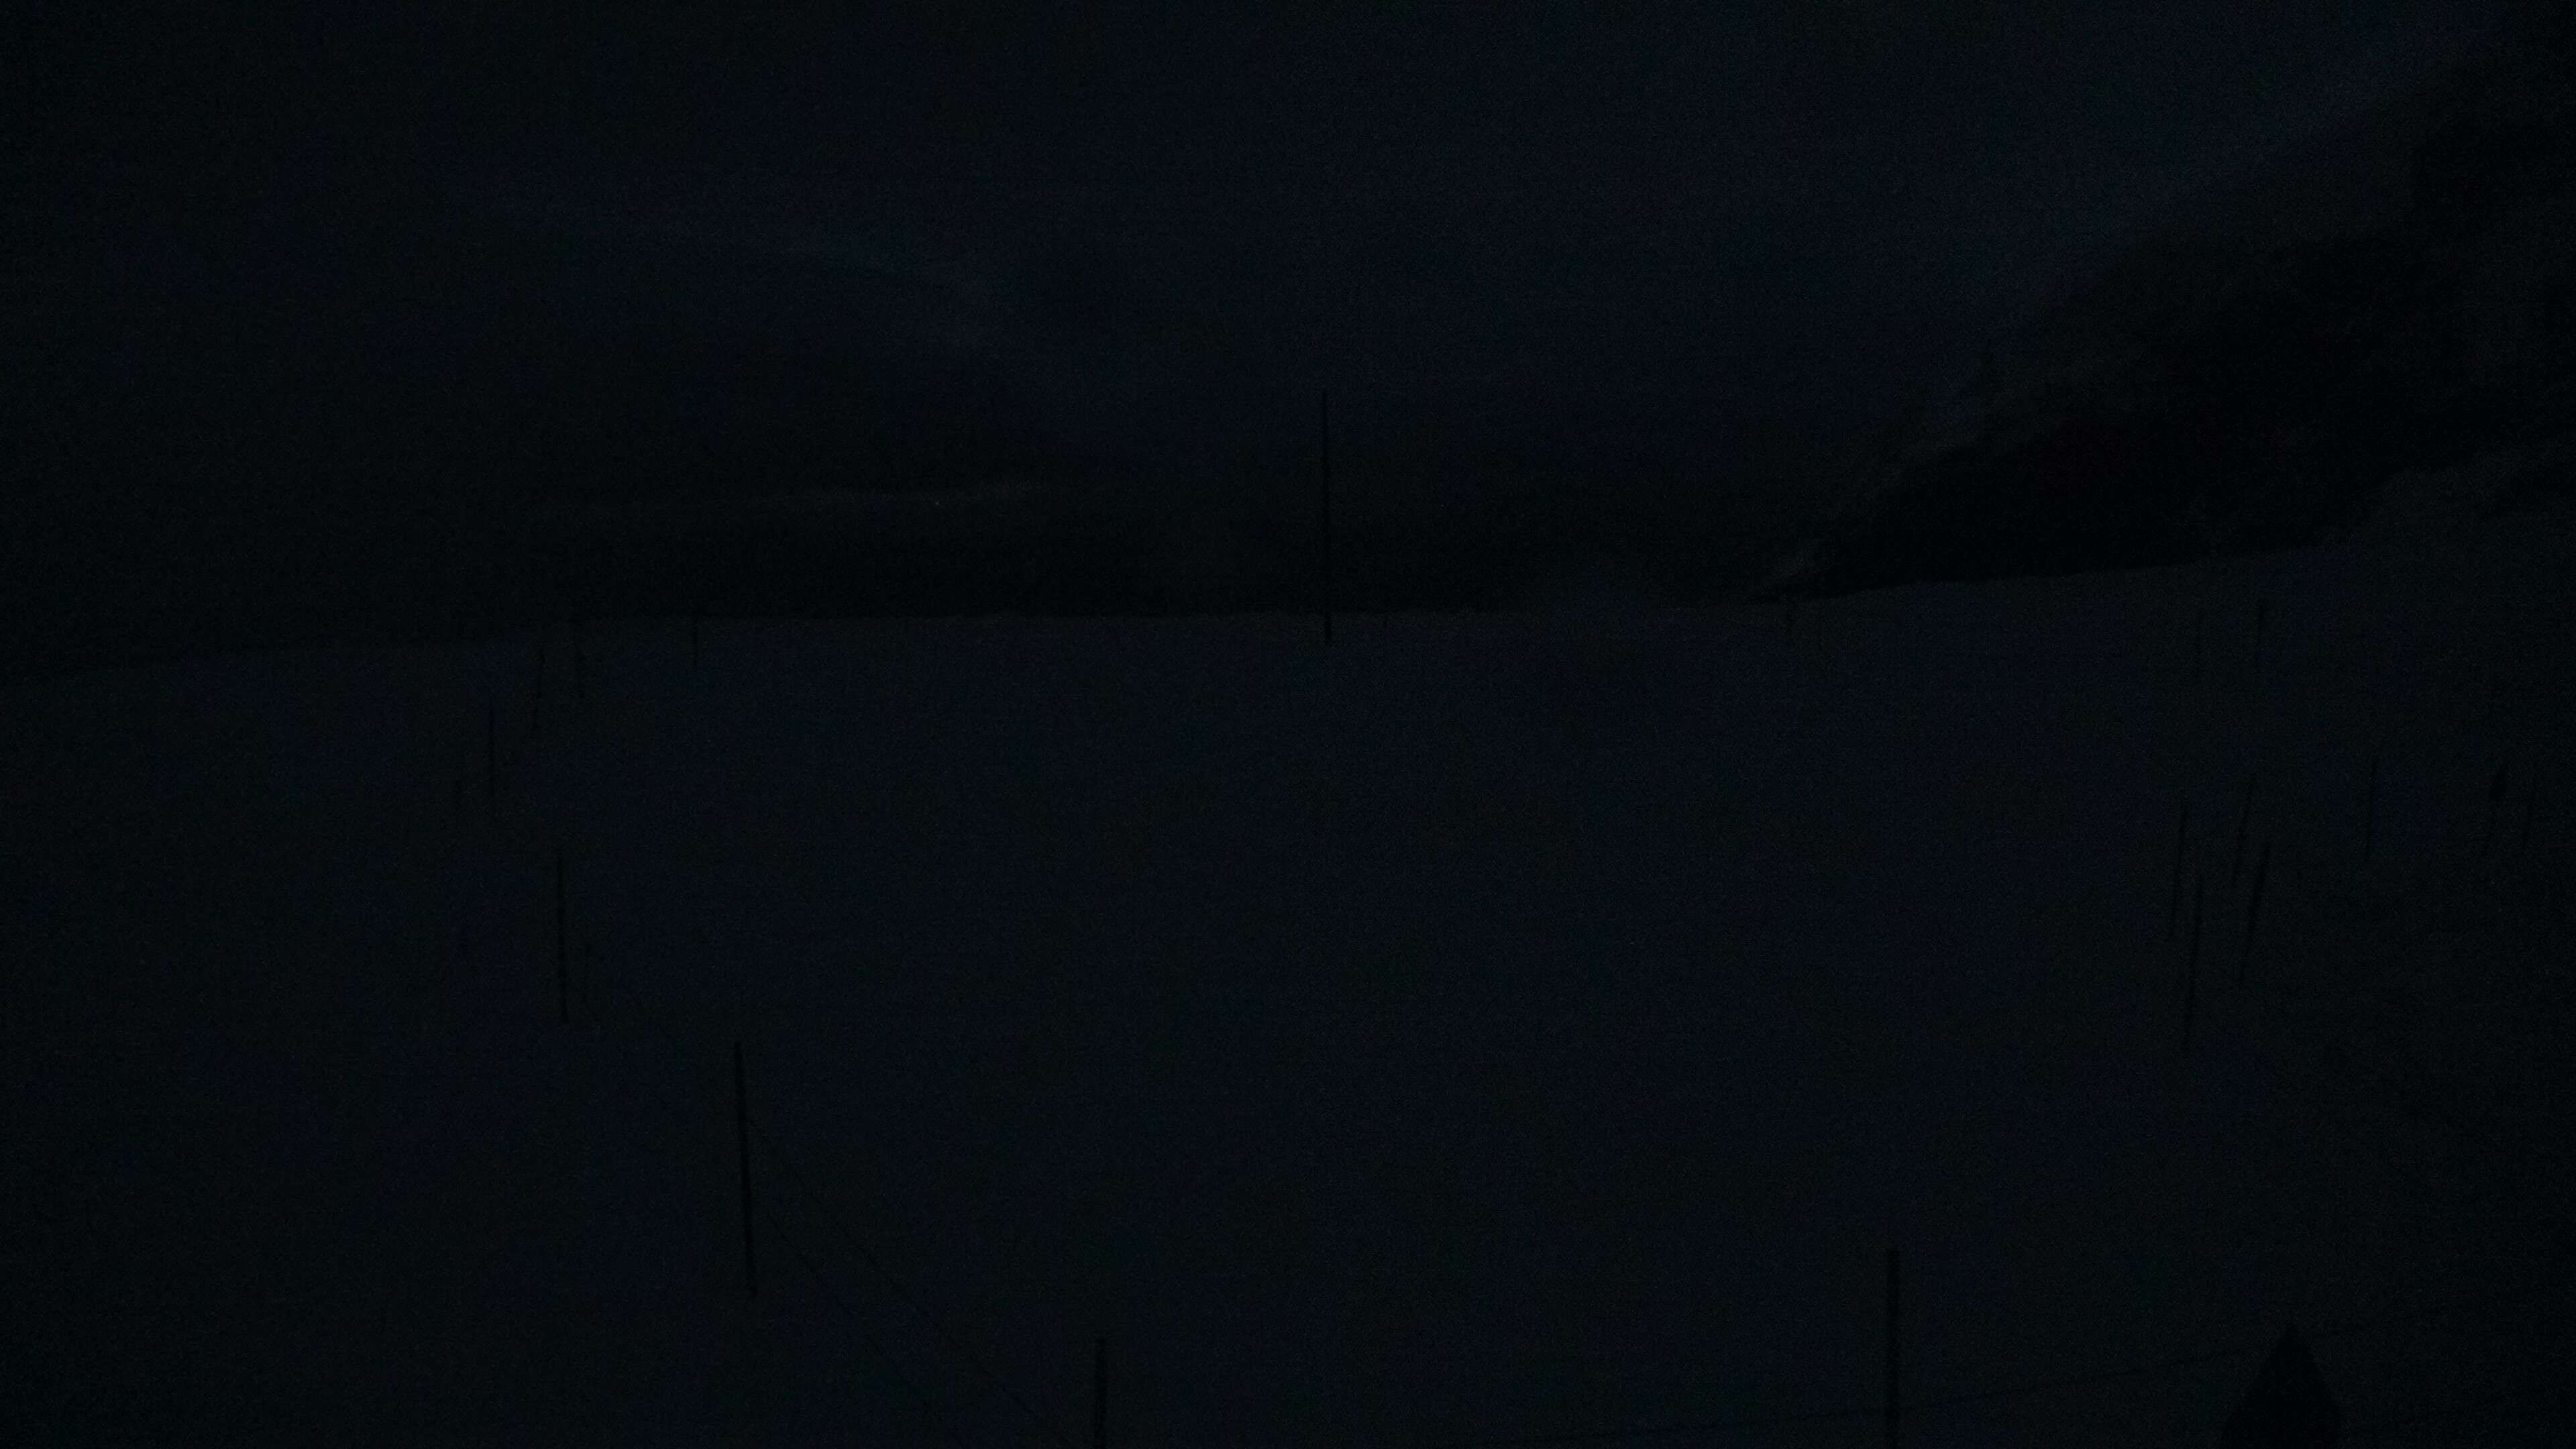 Lauterbrunnen: Jungfraujoch